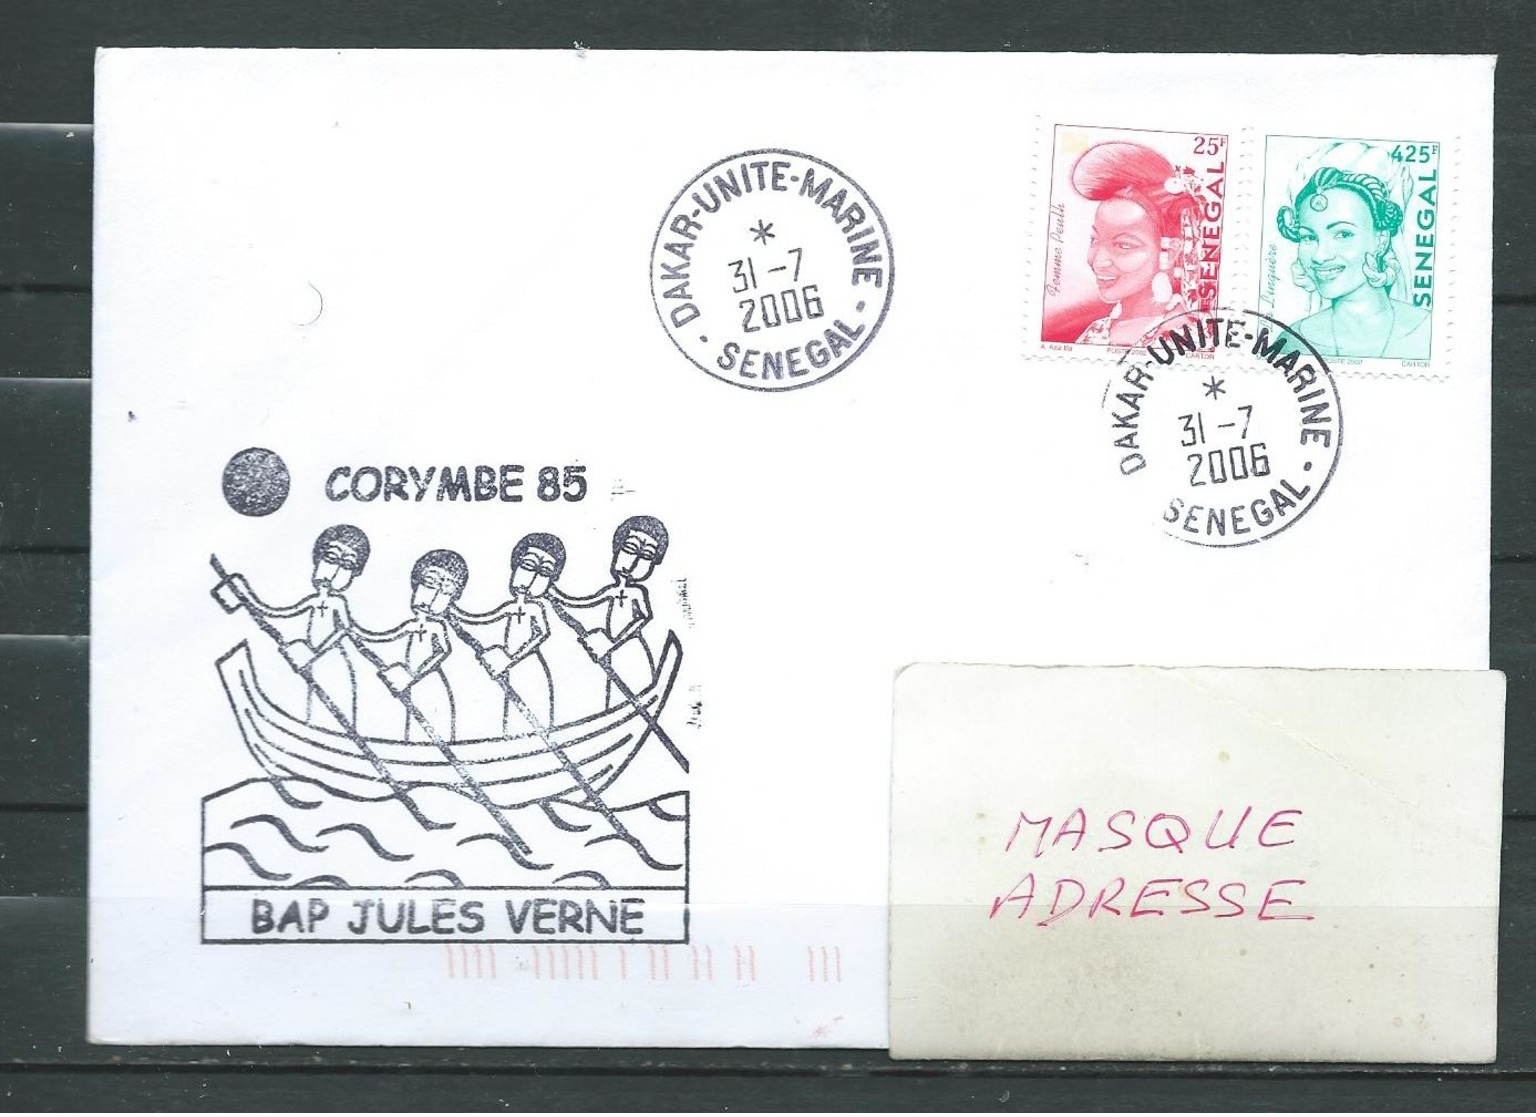 B.A.P JULES VERNE - Mission CORYMBE 85 - Escale à DAKAR - DAKAR UNITE MARINE 31/07/06 Sur Timbres Sénégalais - Poste Navale